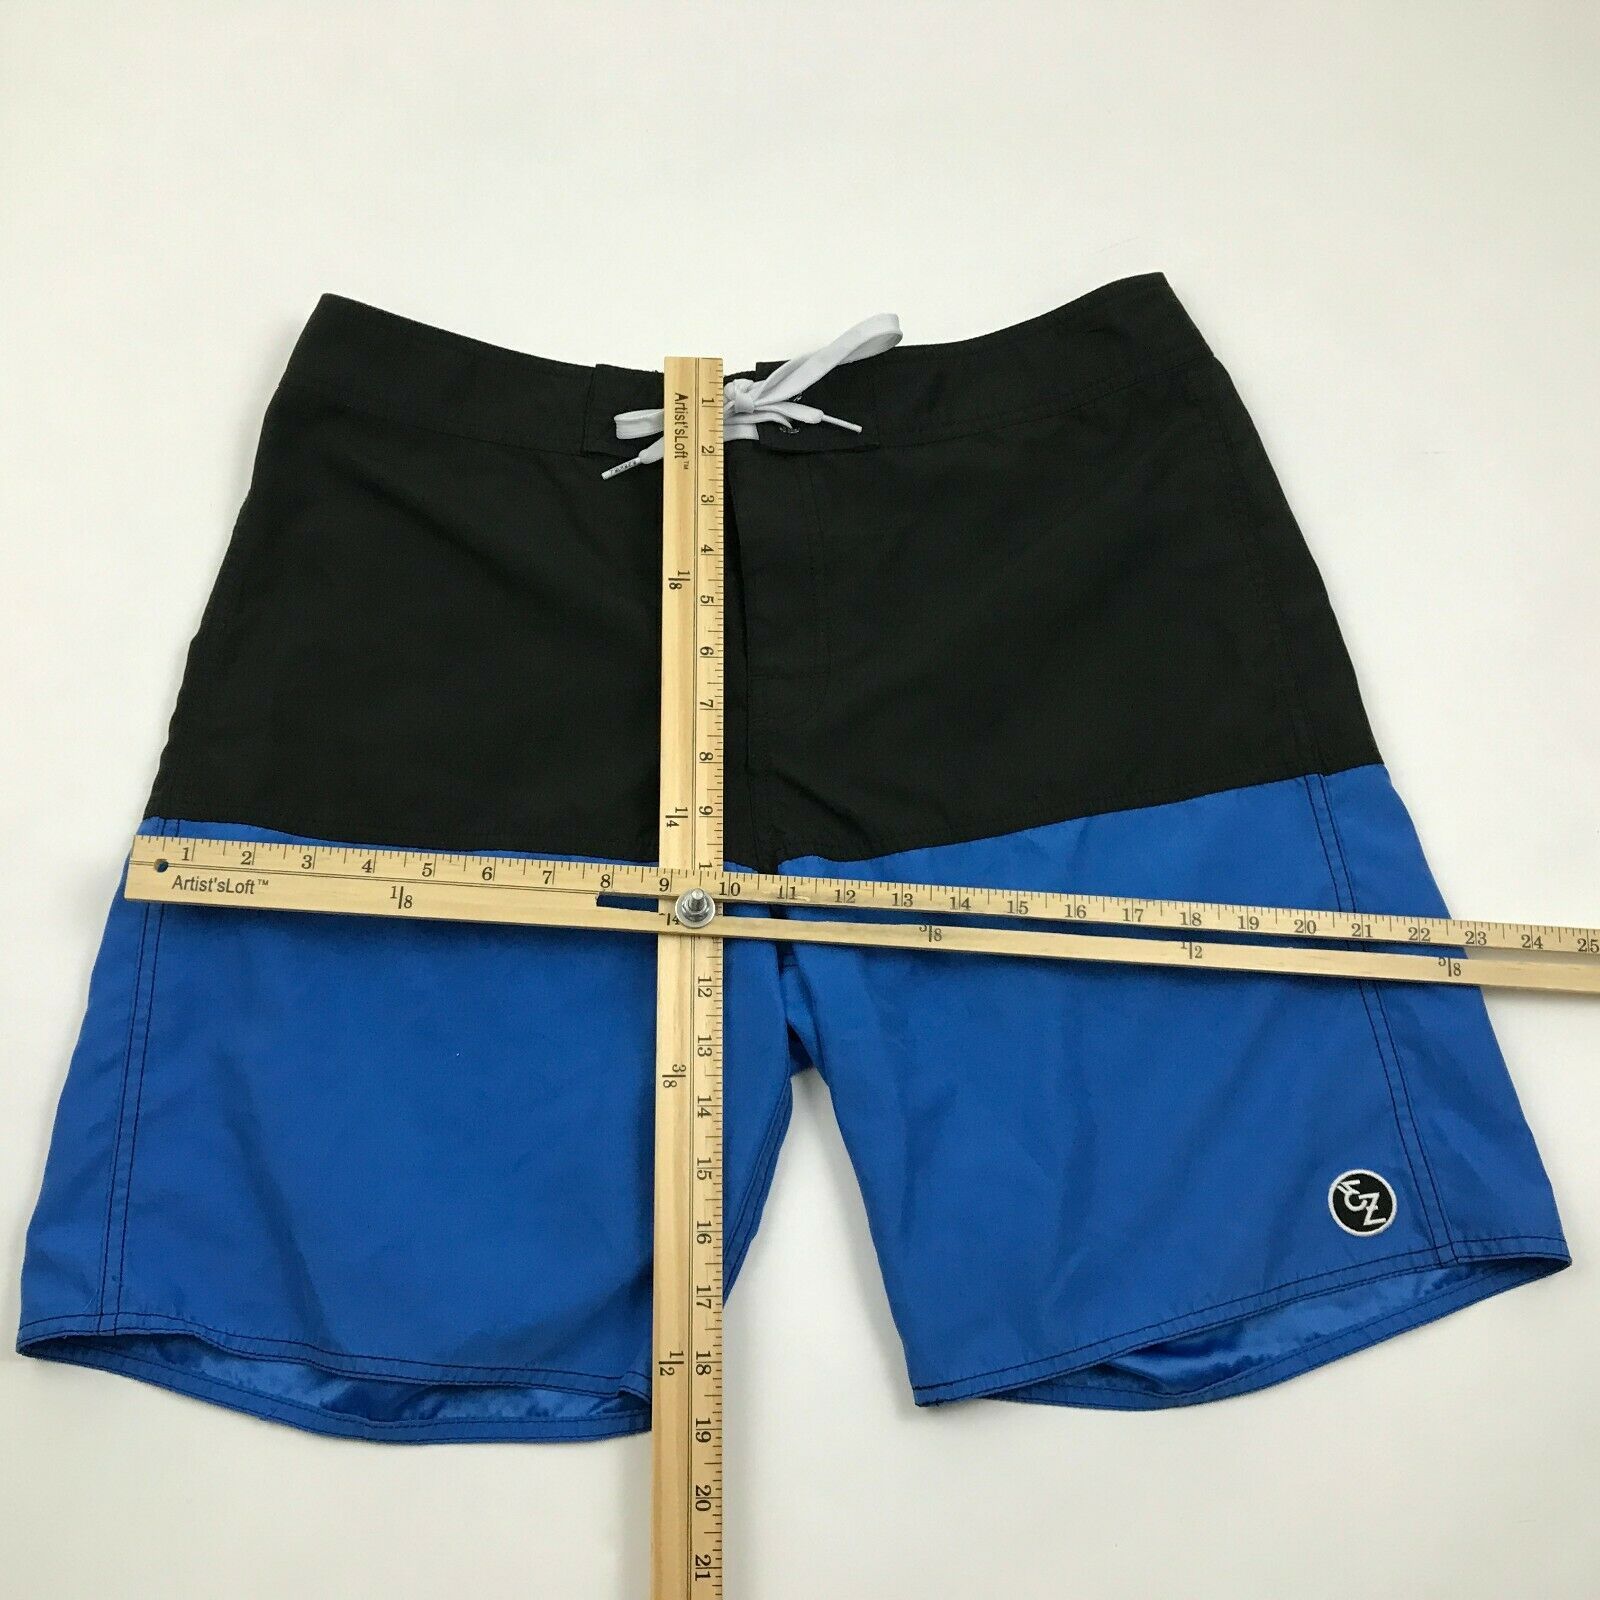 Ezekiel Board Shorts Size 34 Waist Blue Swimsuit Bottoms Unlined ...